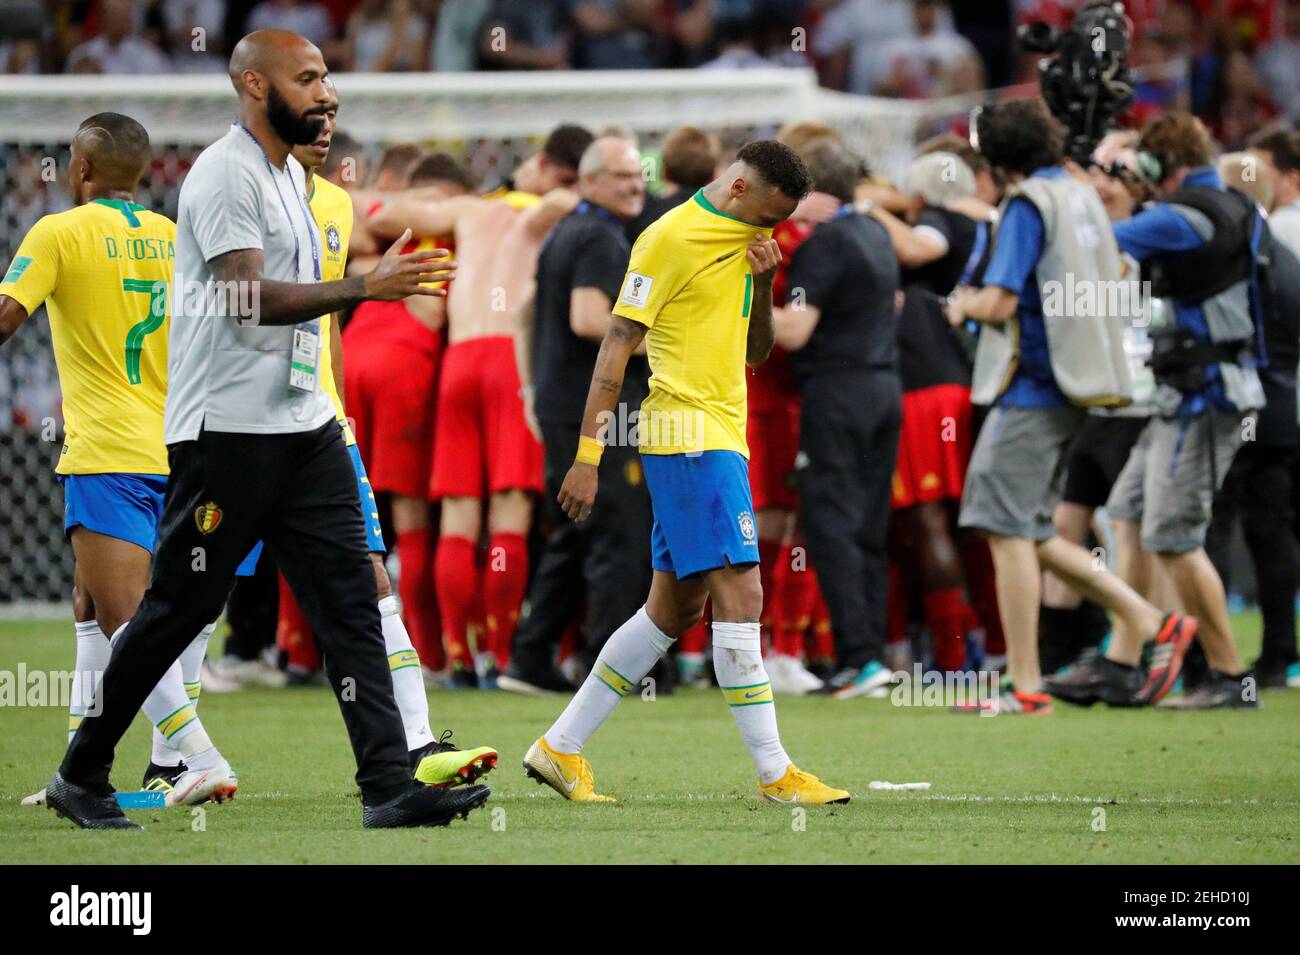 Football football - coupe du monde - quart de finale - Brésil contre Belgique - Kazan Arena, Kazan, Russie - 6 juillet 2018 le brésilien Neymar semble abattu à la fin du match, tandis que l'entraîneur adjoint belge Thierry Henry regarde REUTERS/Toru Hanai Banque D'Images